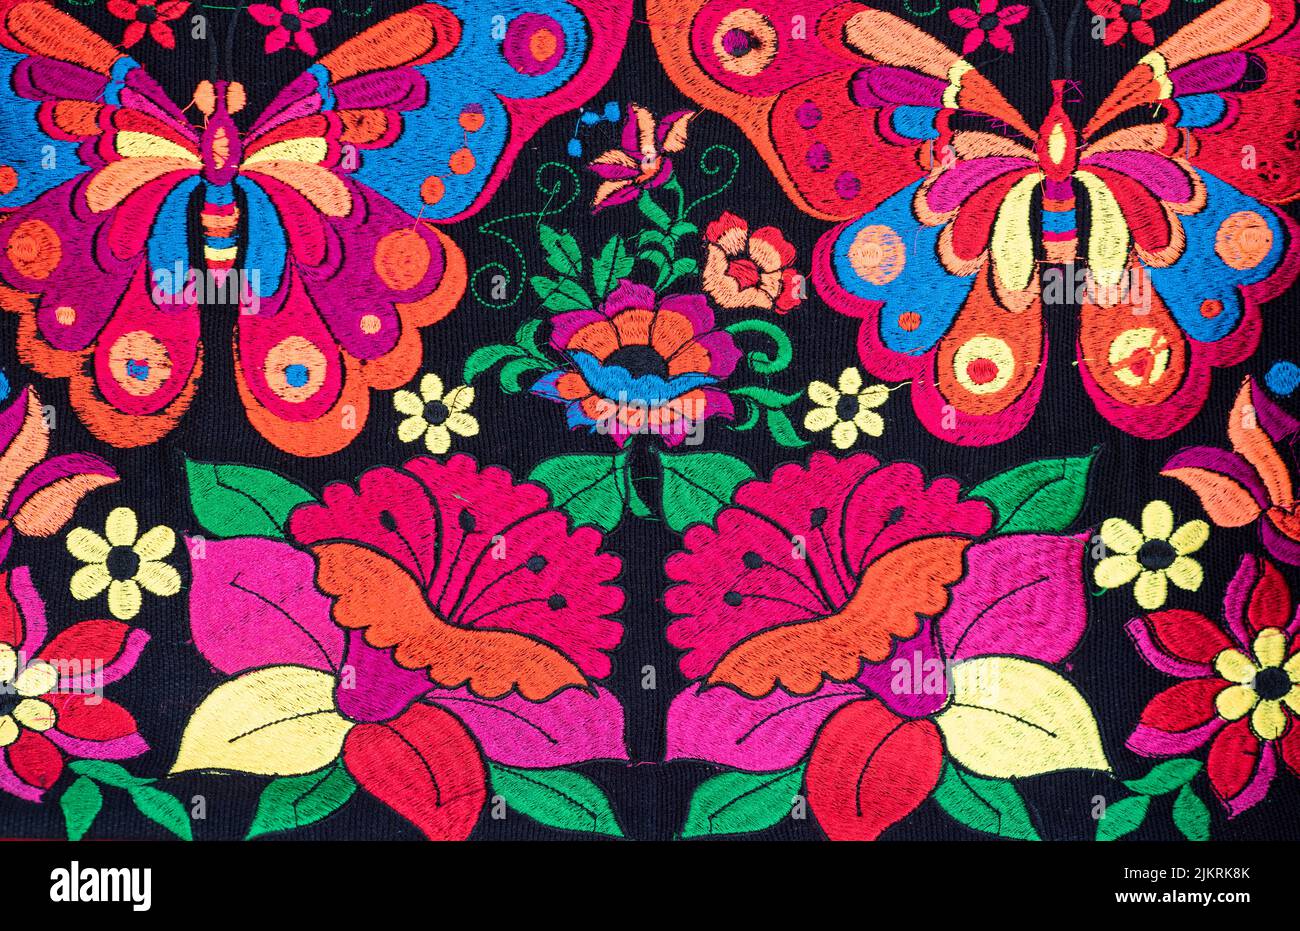 Telas coloridas y artesanales de Chiapas, México. Flores bordeadas en varios colores y mariposas sobre fondo negro Foto de stock